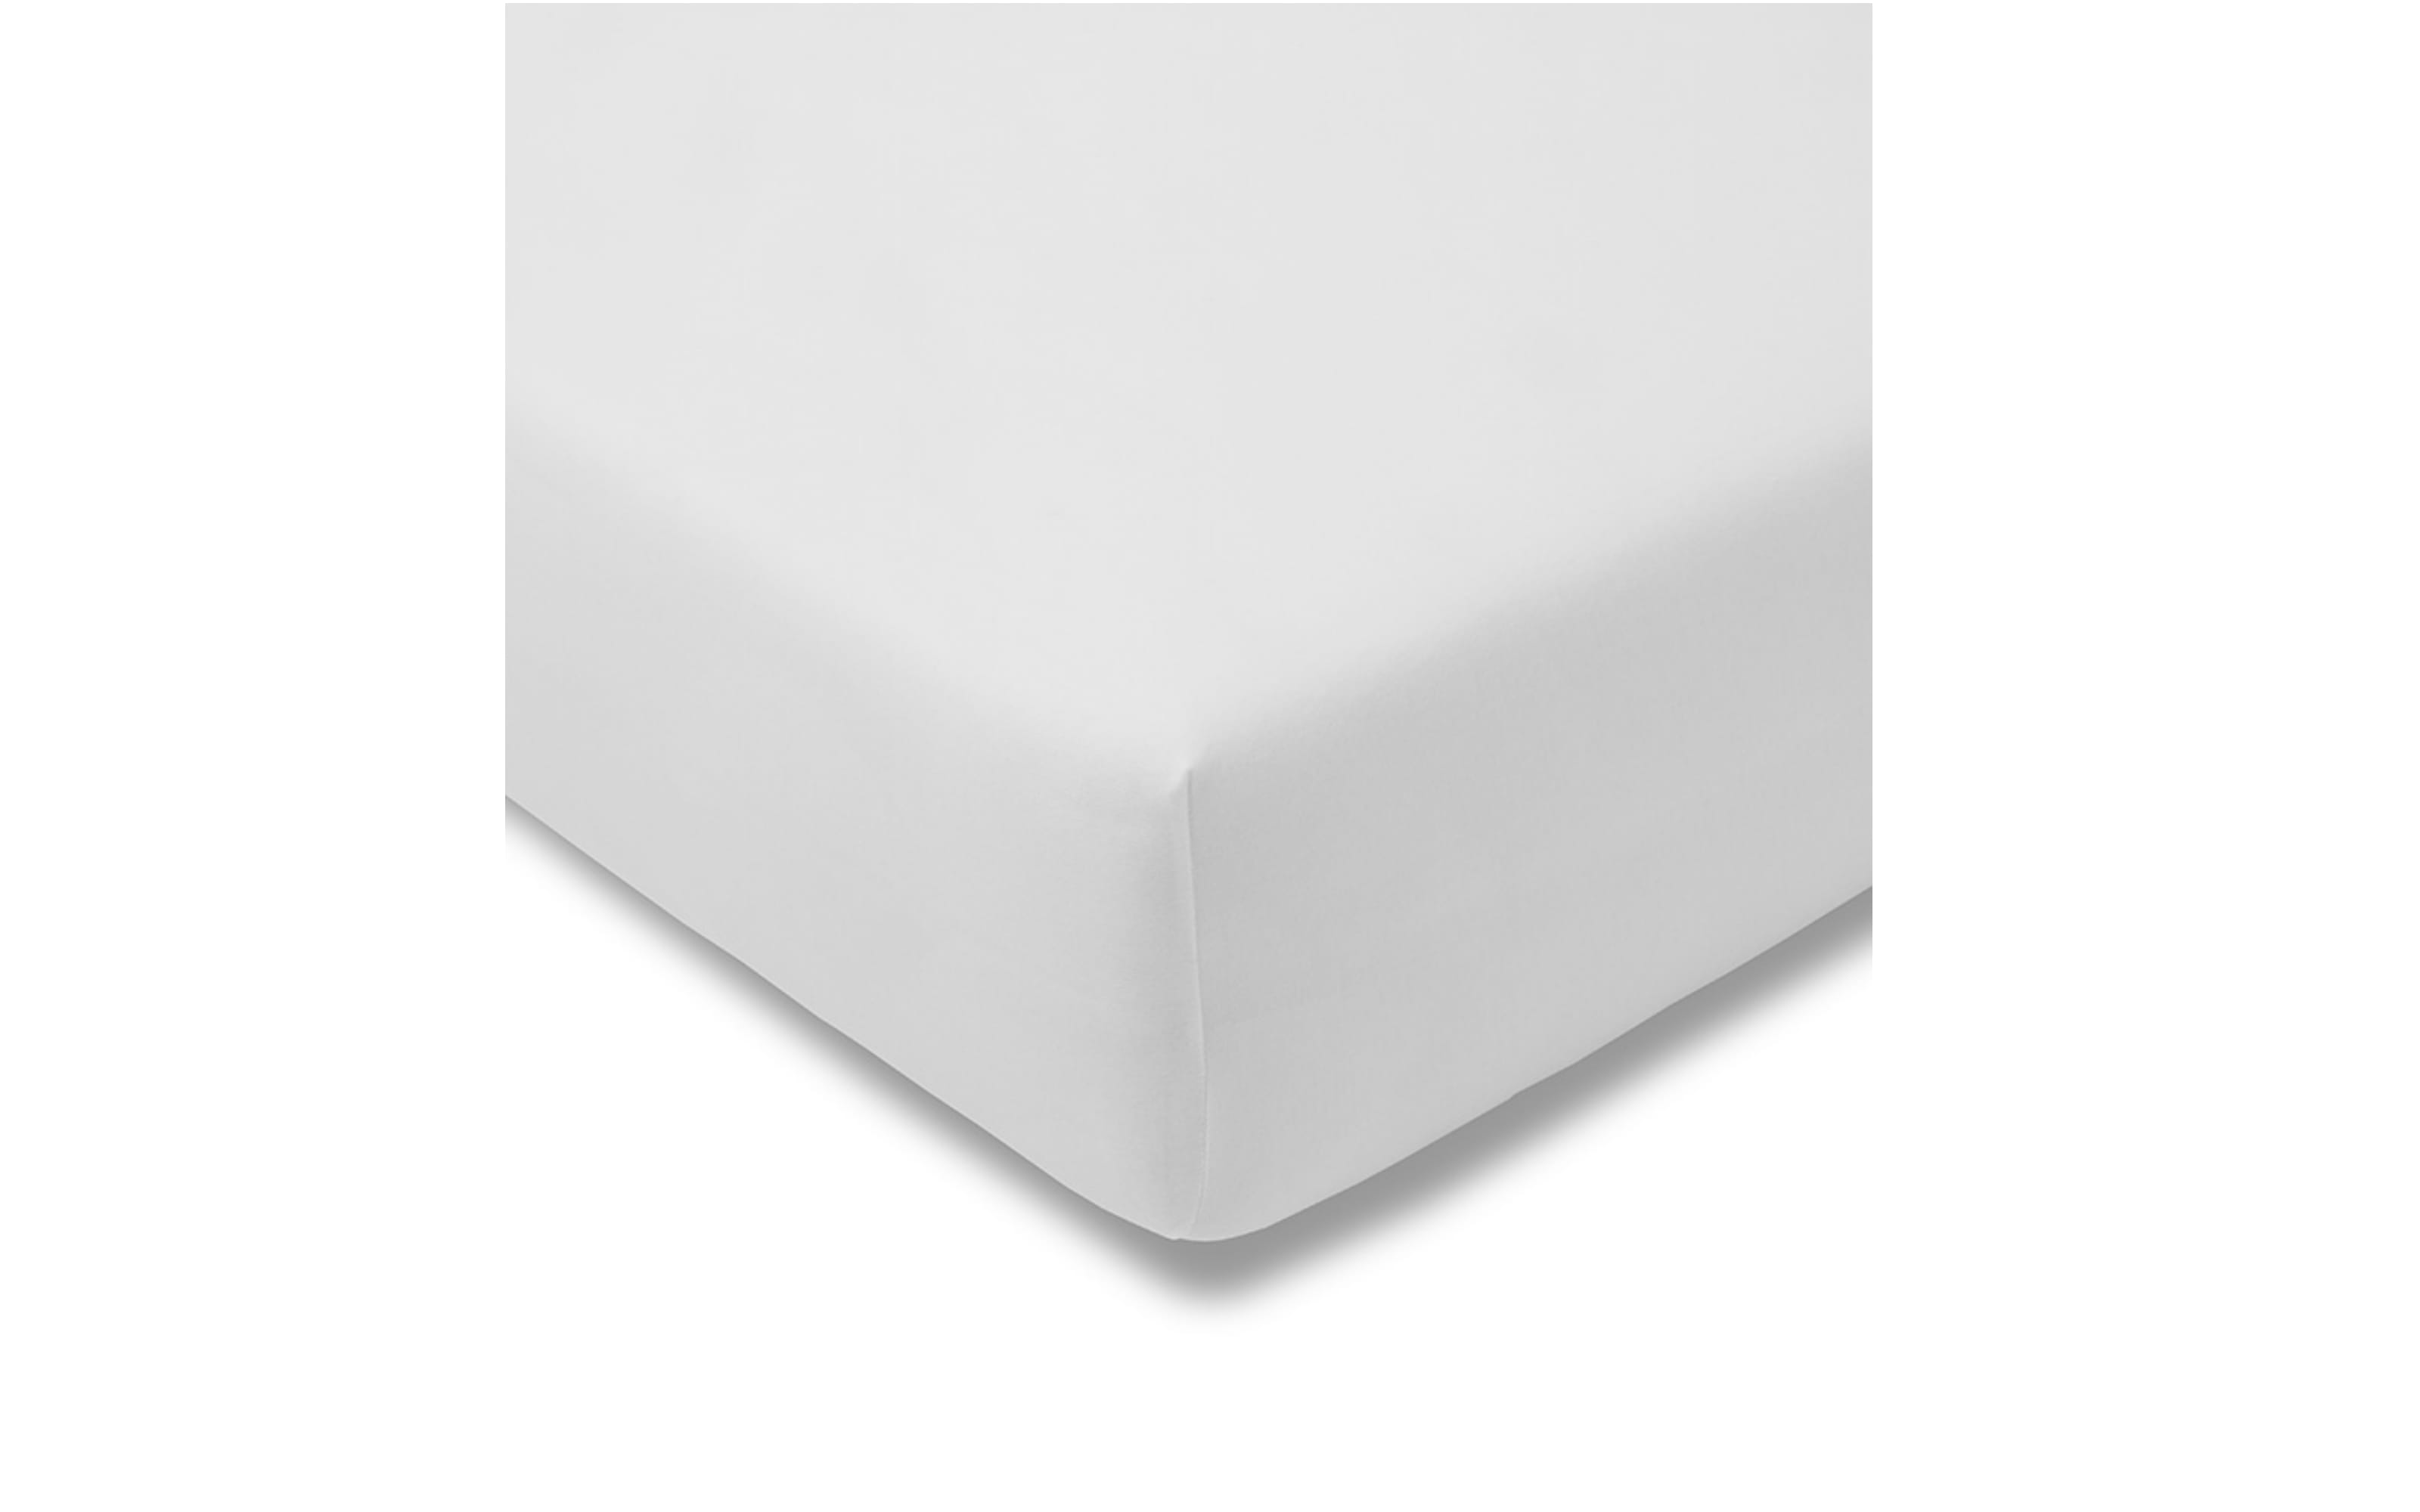 Spannbettlaken Fein Jersey in weiß, 200 x 200 cm